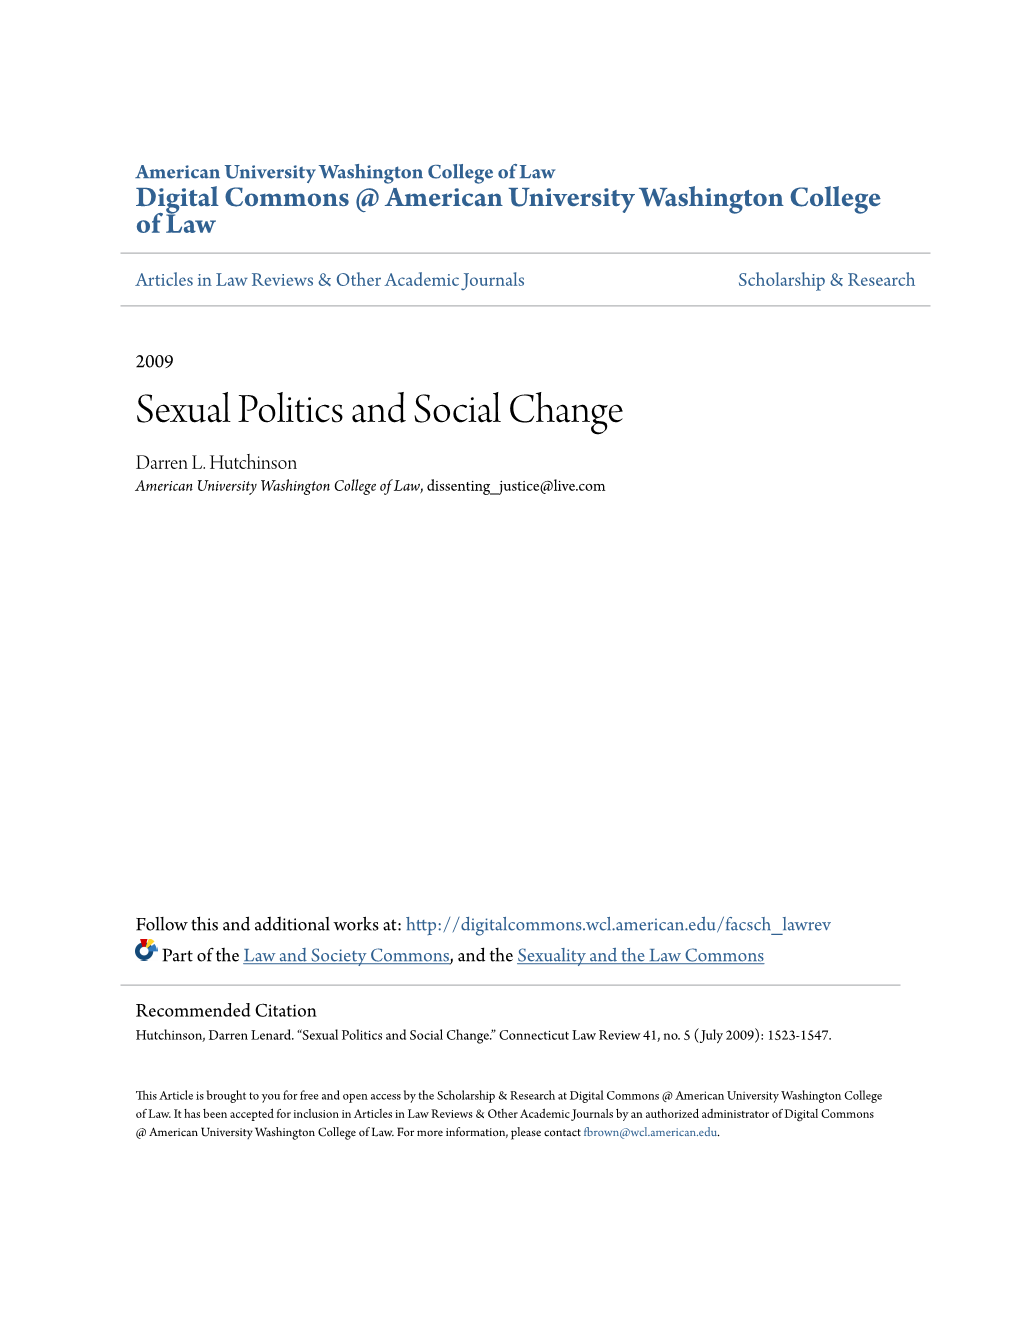 Sexual Politics and Social Change Darren L